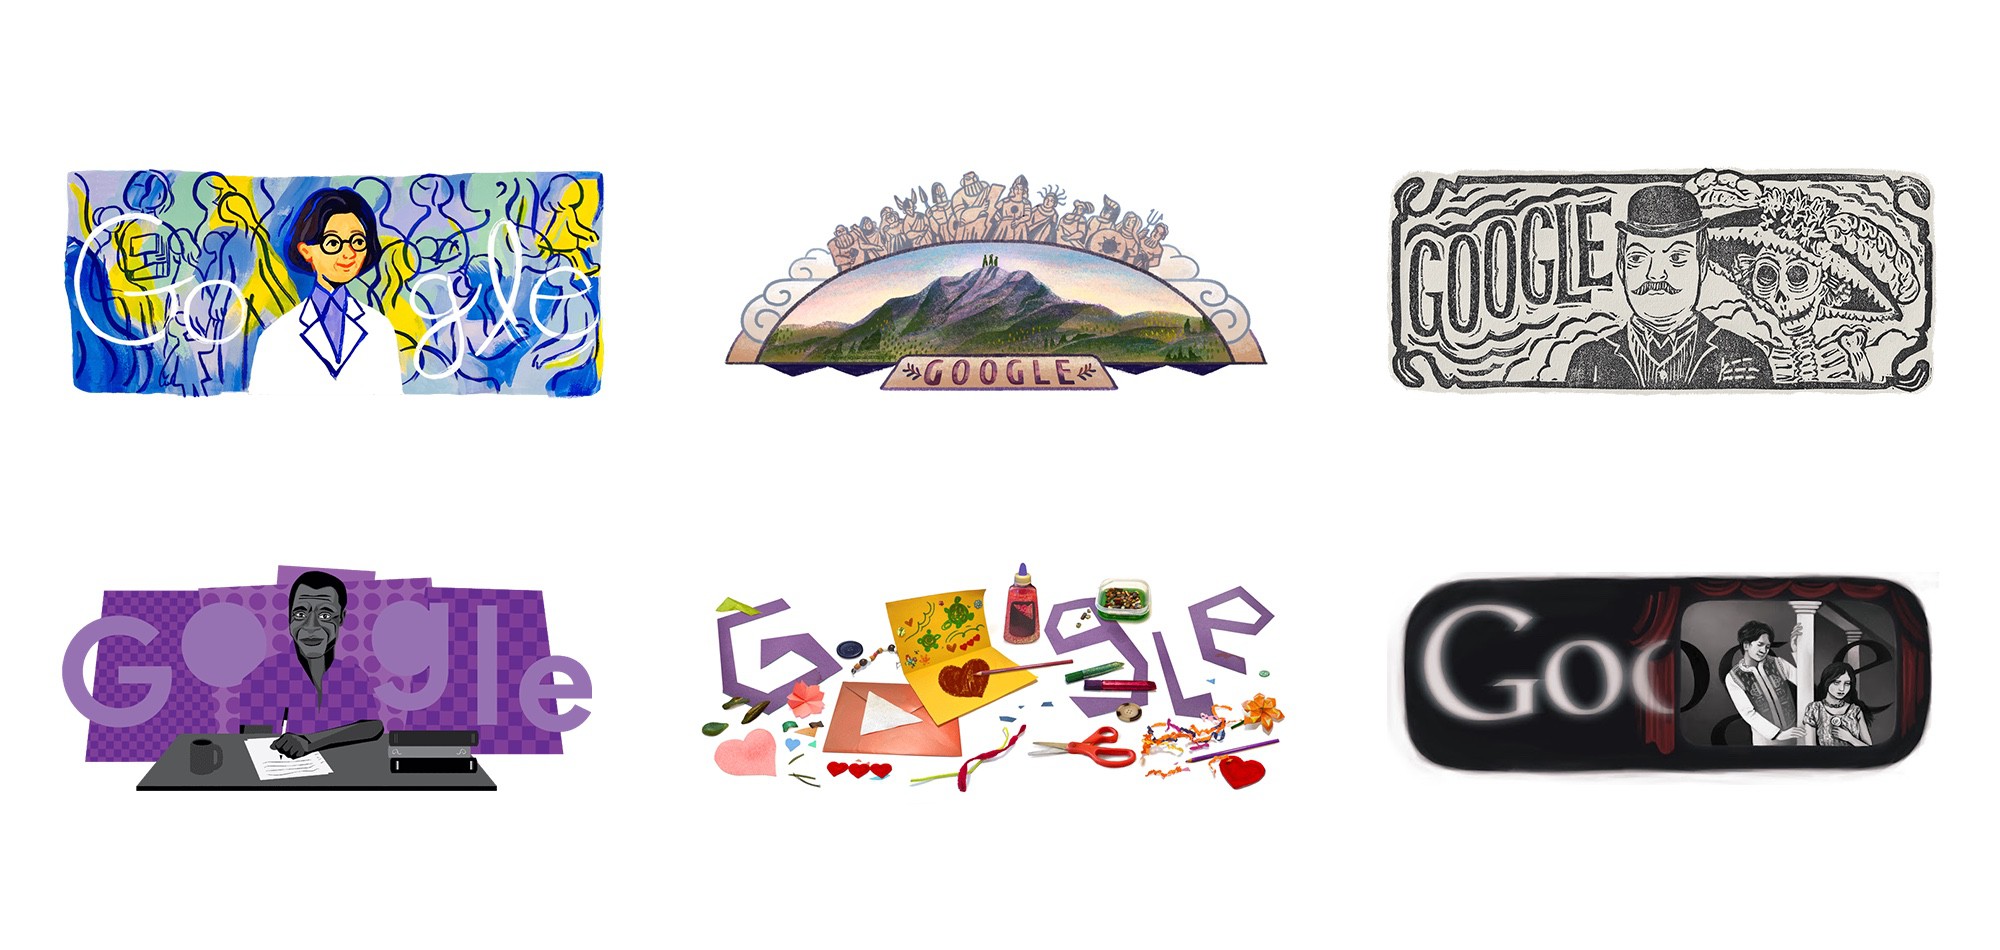 Insieme di alcuni esempi dei Doodle di Google.